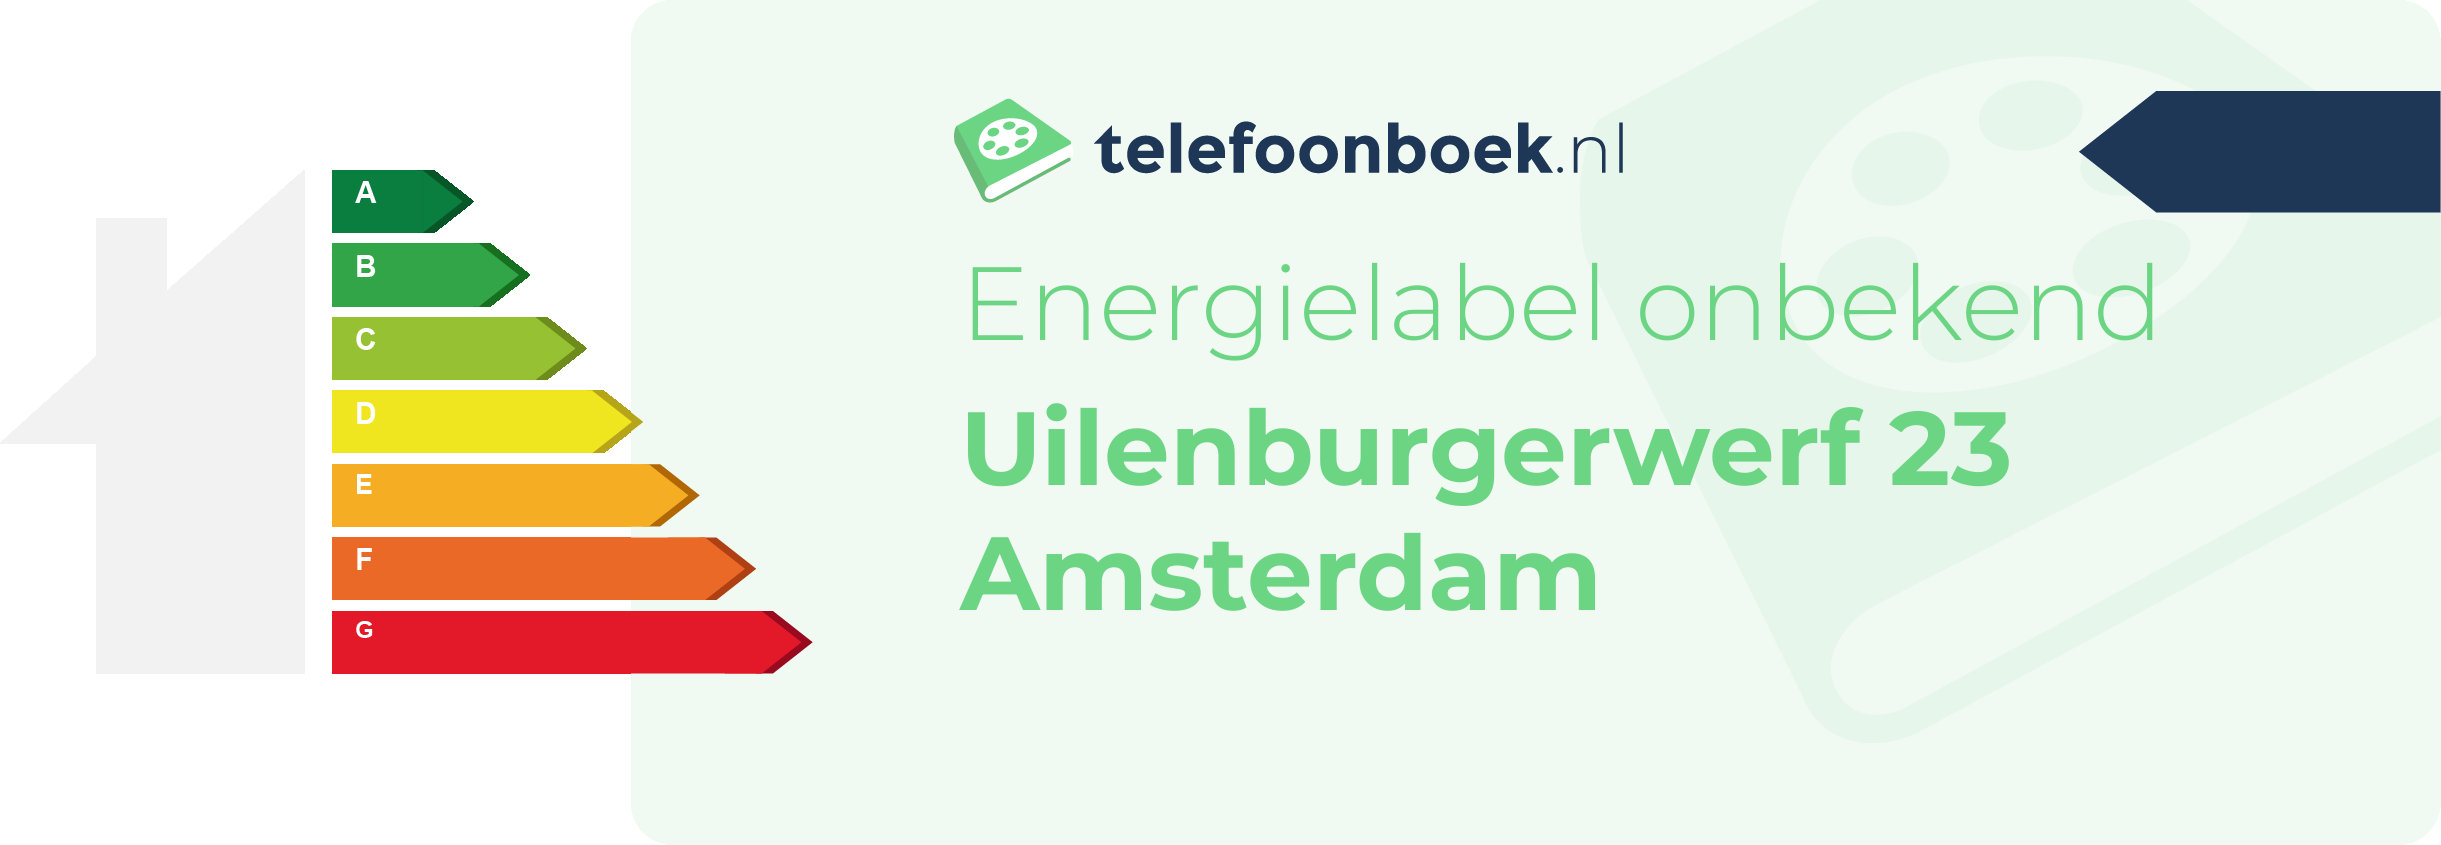 Energielabel Uilenburgerwerf 23 Amsterdam